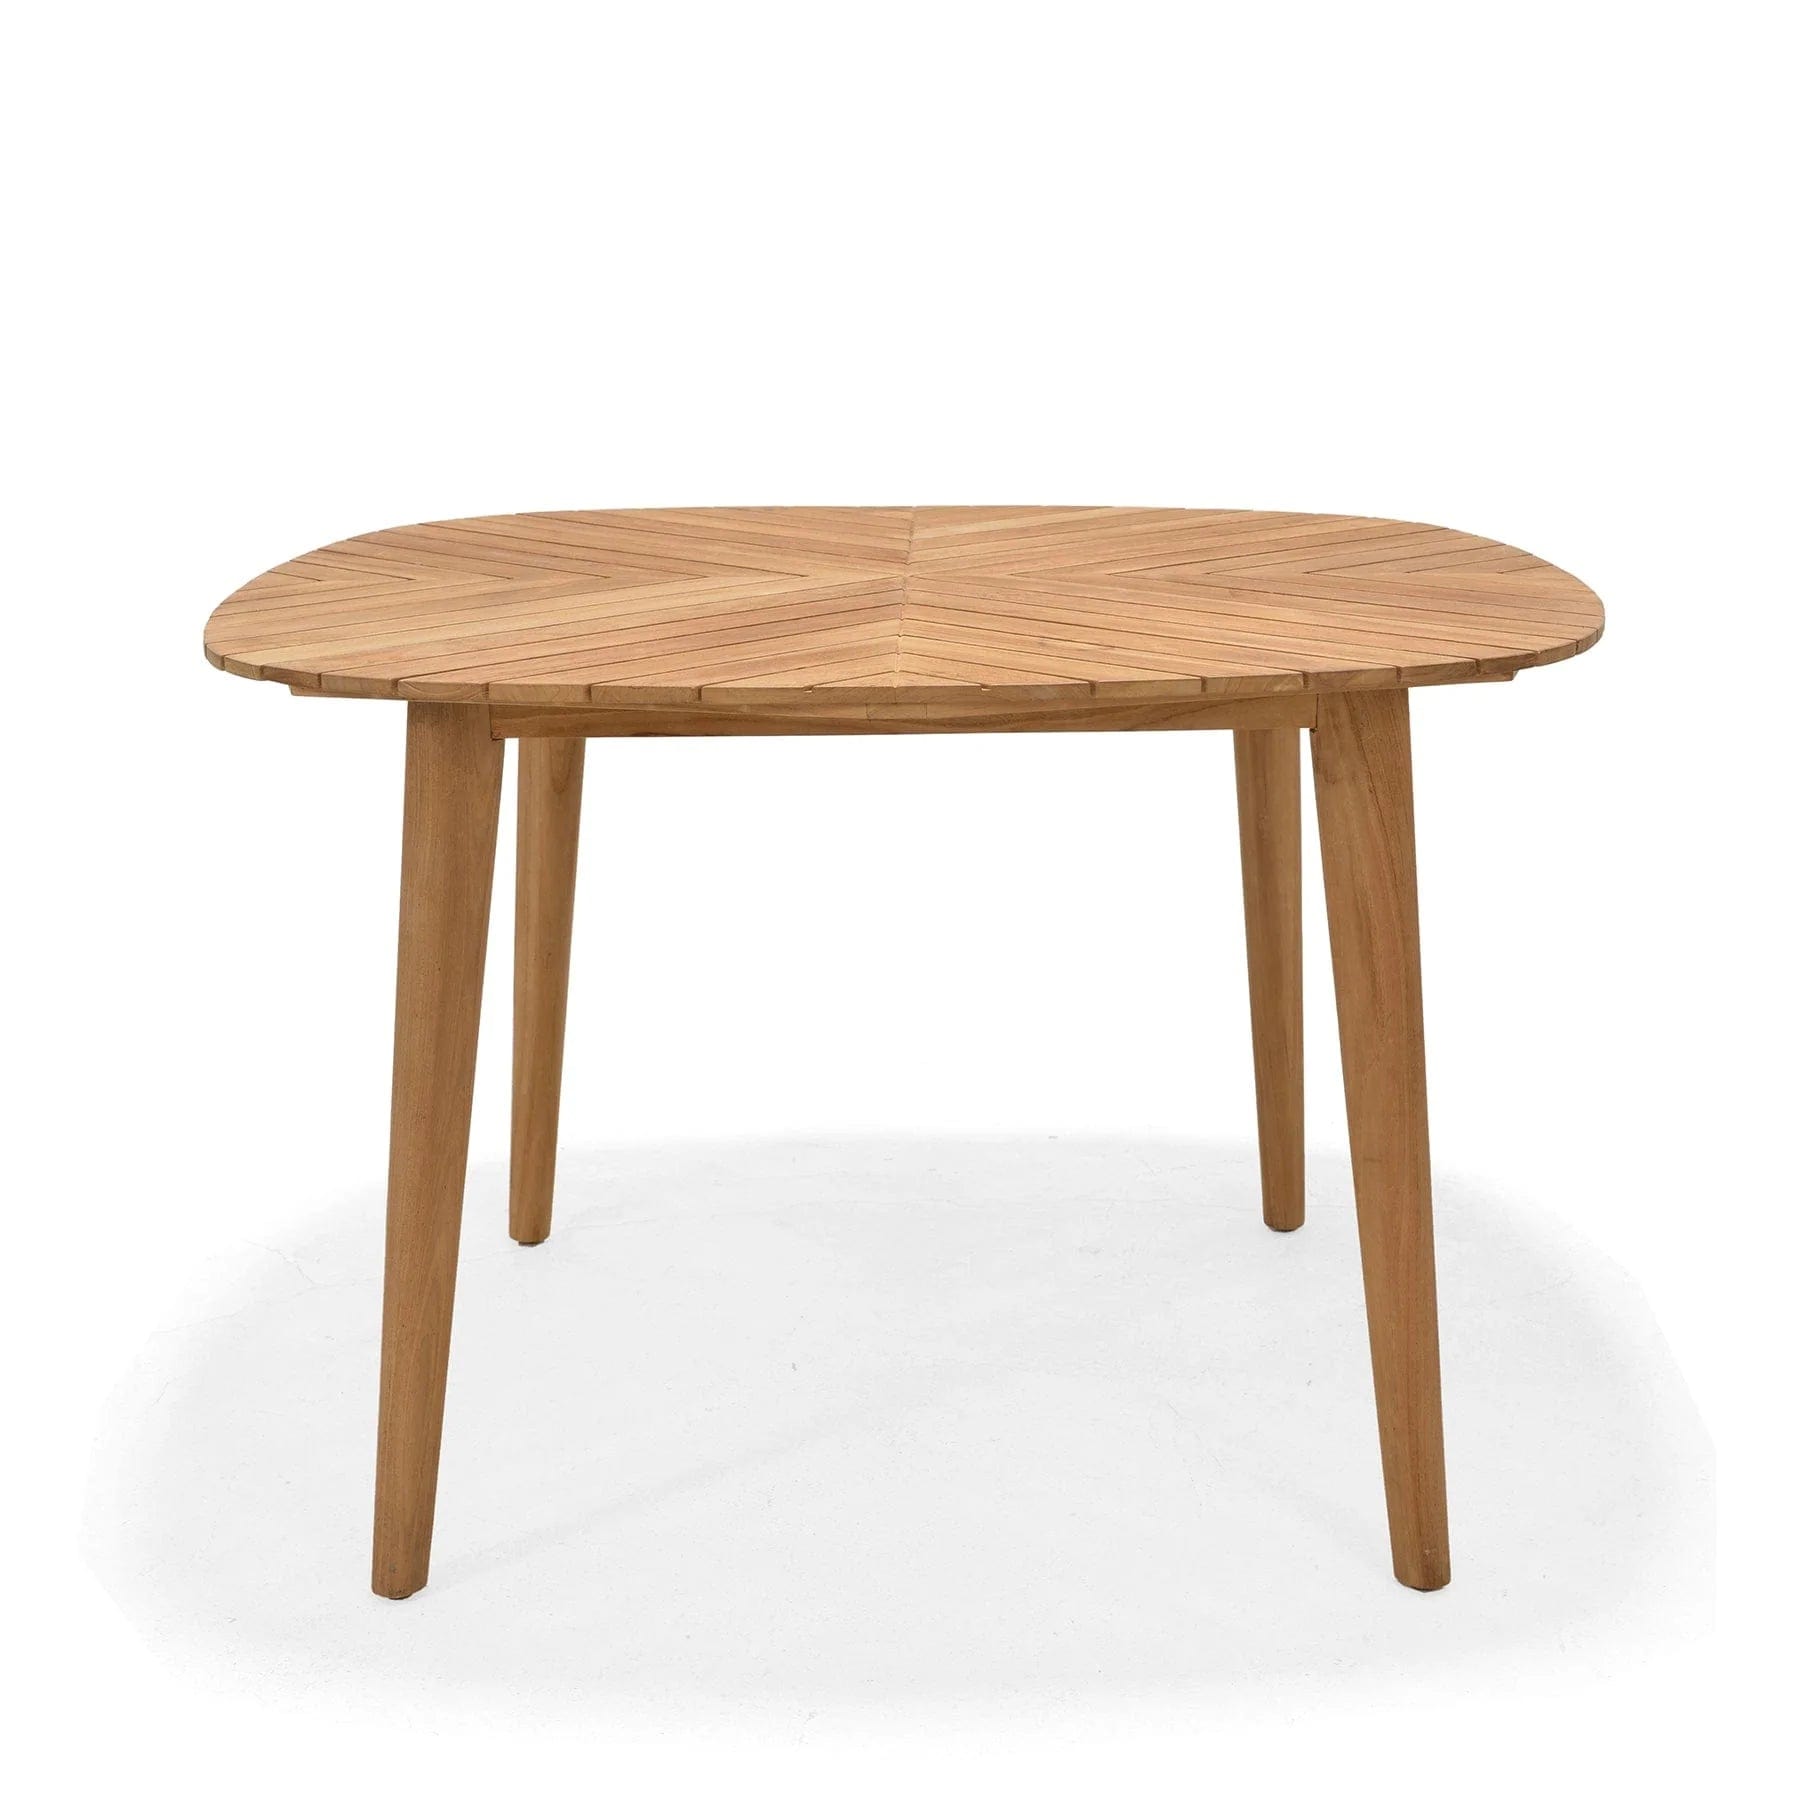 Social Plastic® nassau 4 seat teak table set